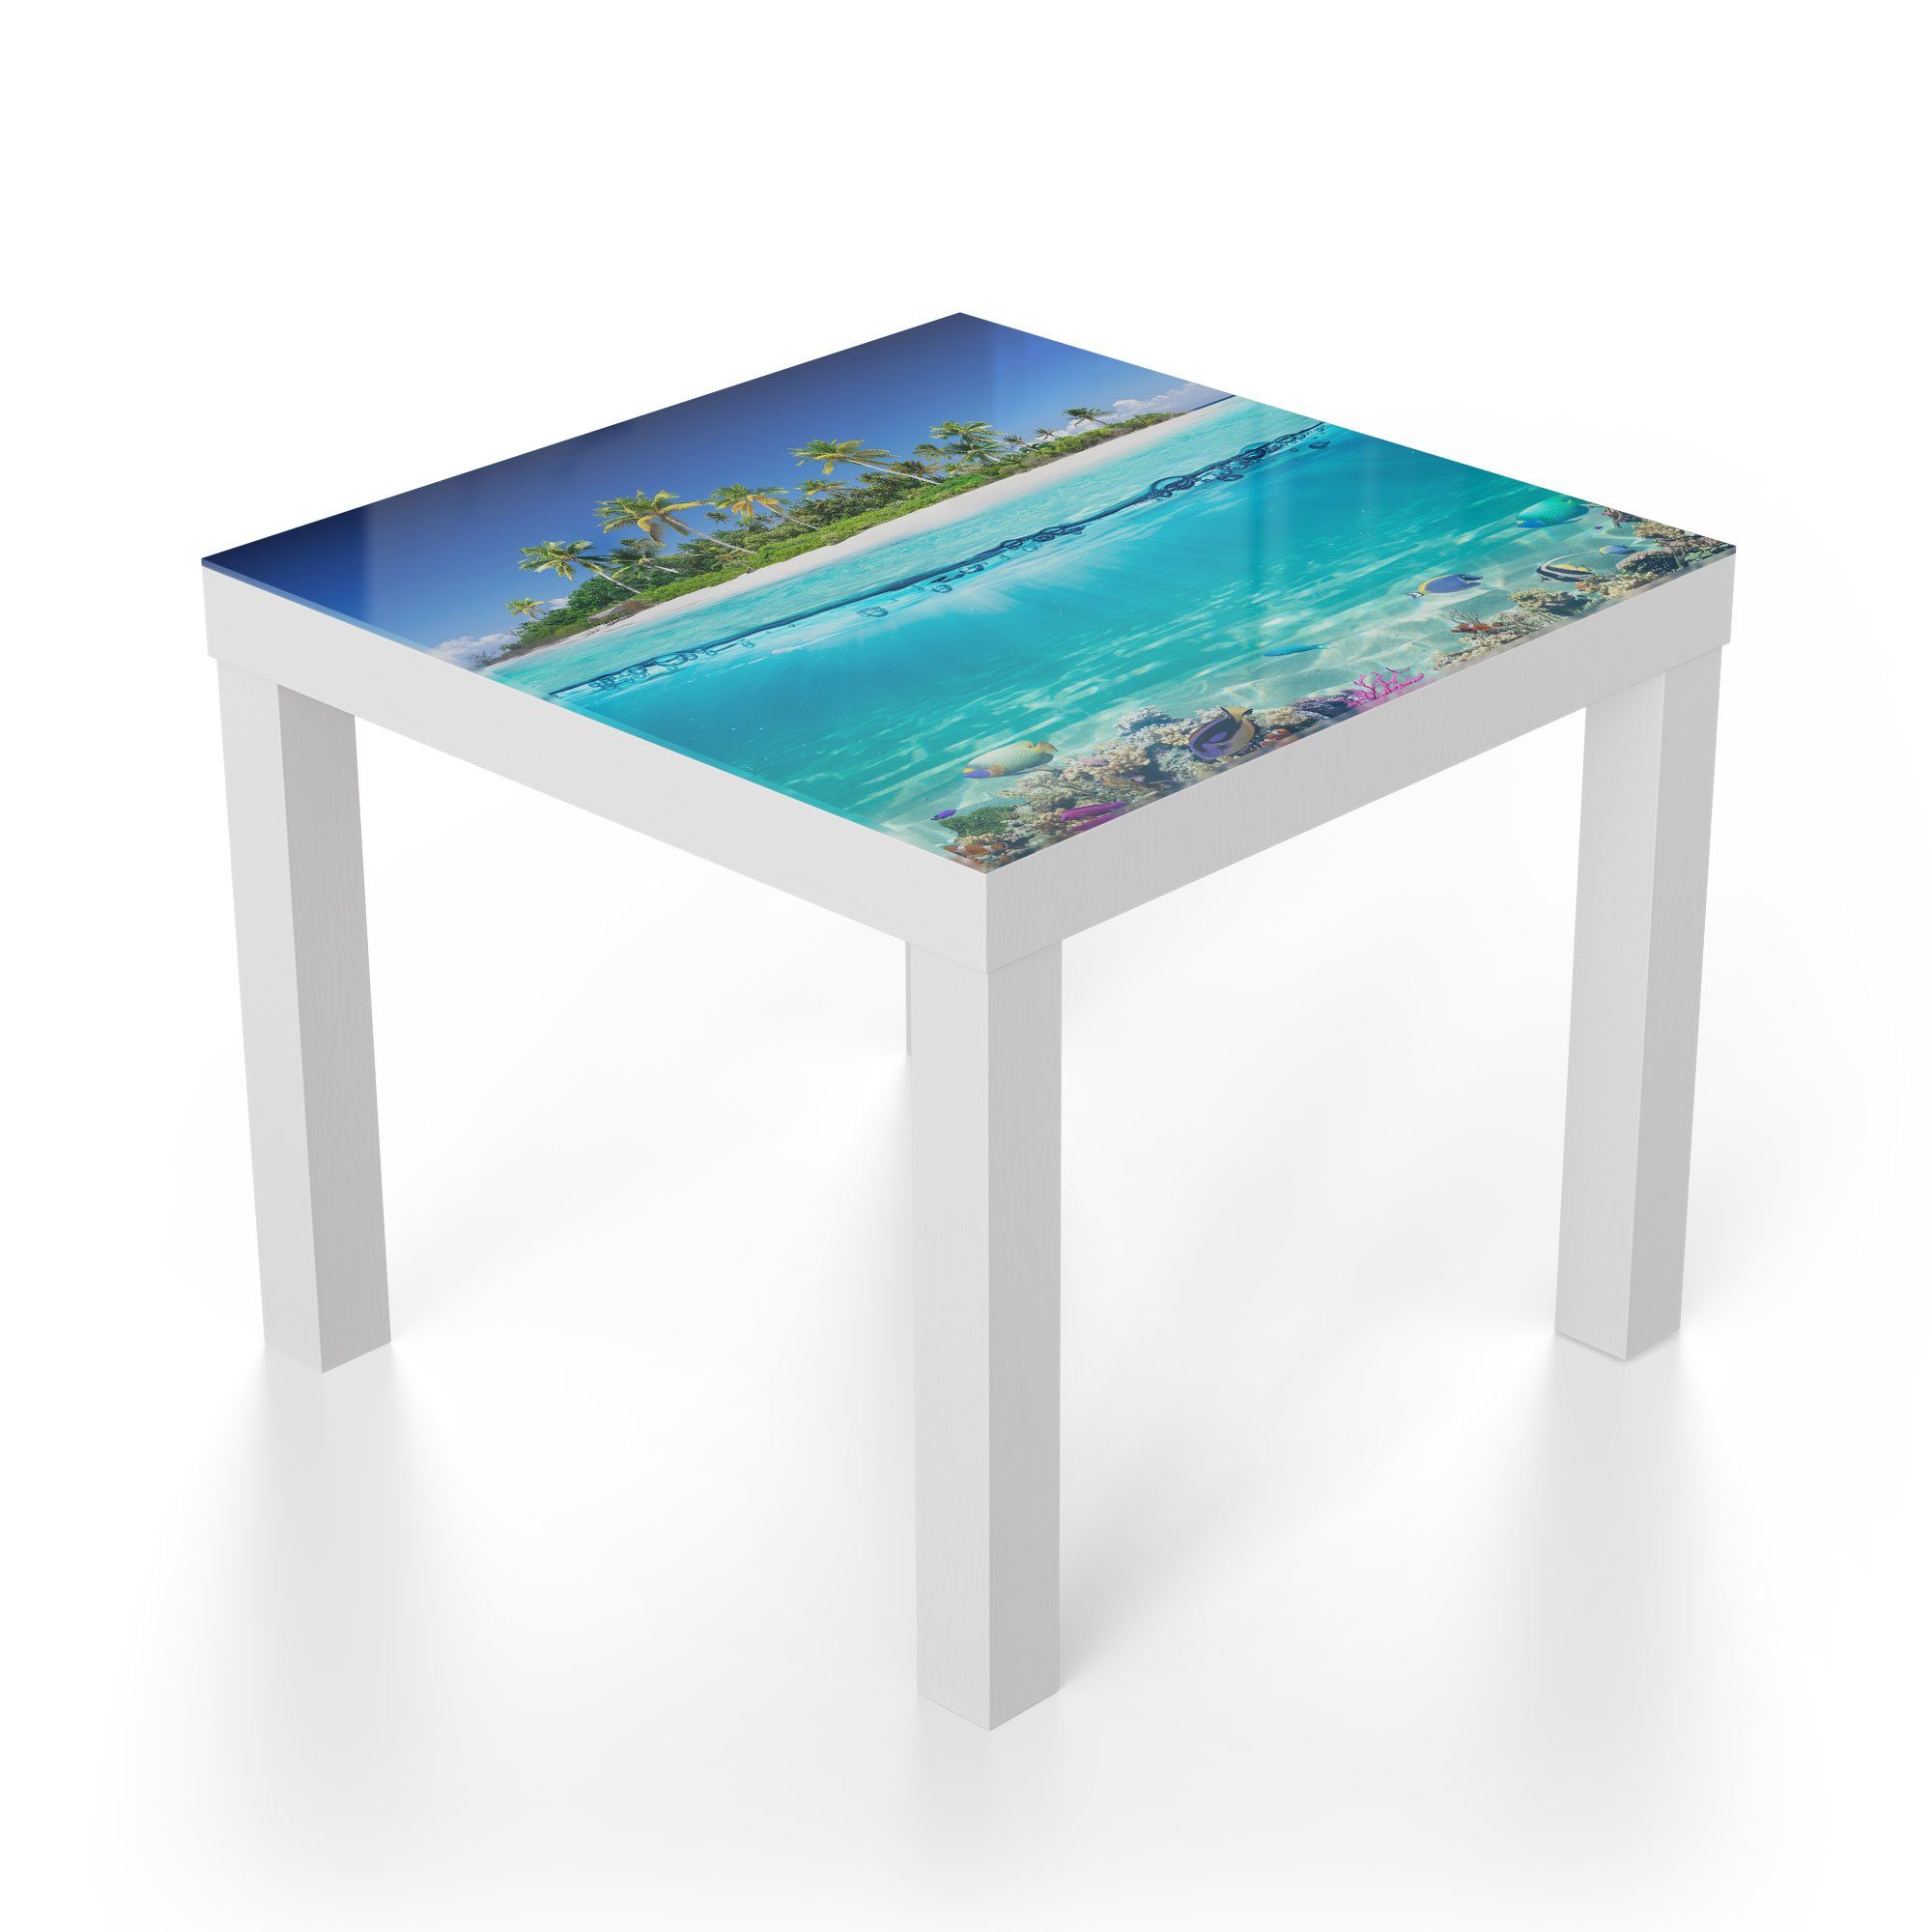 Glas modern Glastisch Meer', im Couchtisch Beistelltisch DEQORI tropischen Weiß 'Insel